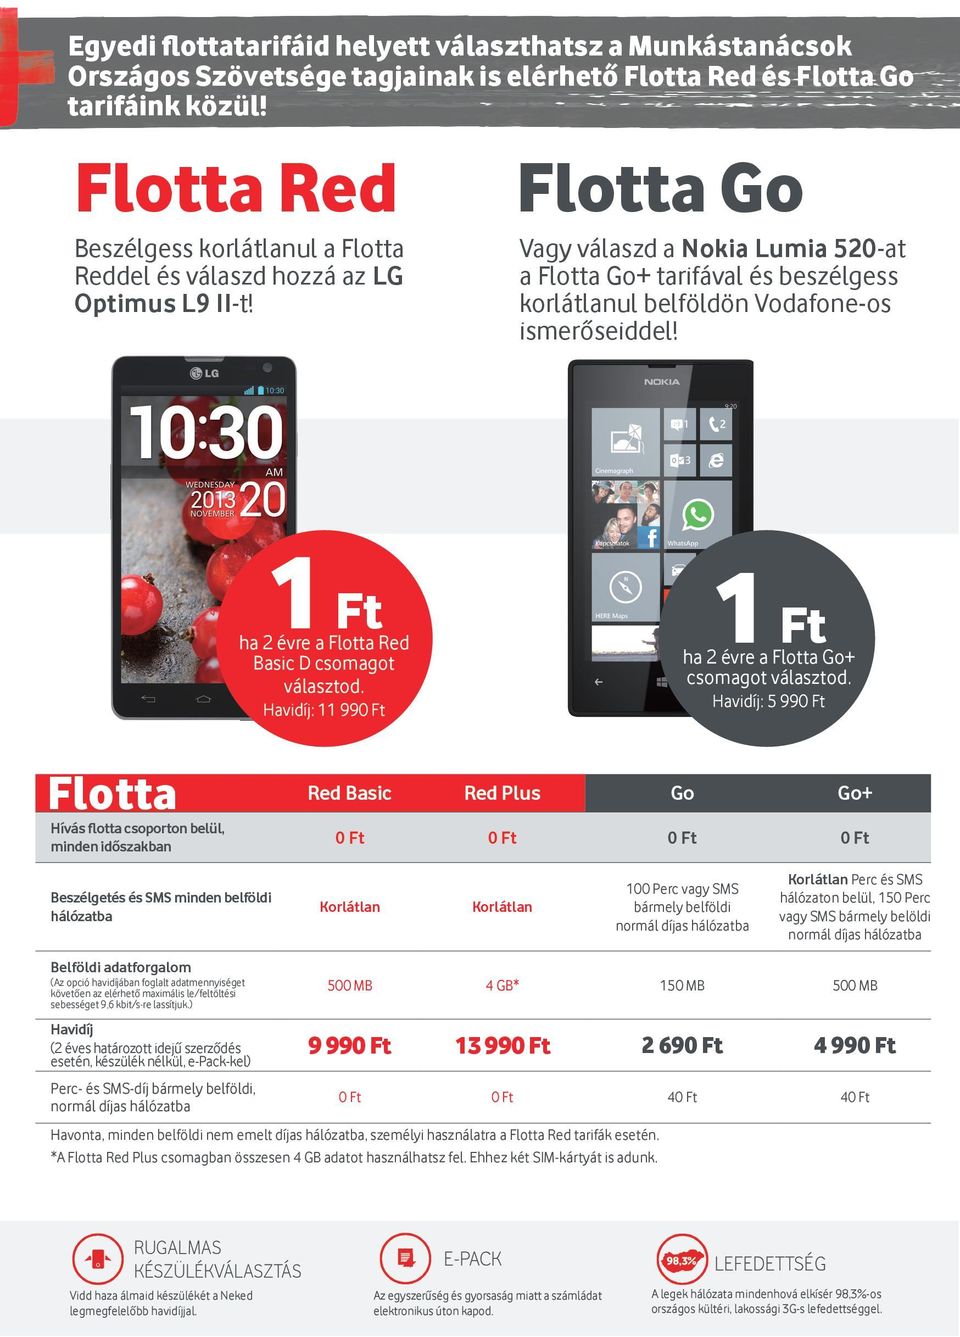 Flotta Go Vagy válaszd a Nokia Lumia 520-at a Flotta Go+ tarifával és beszélgess korlátlanul belföldön Vodafone-os ismerőseiddel! 1 Ft ha 2 évre a Flotta Red Basic D csomagot választod.